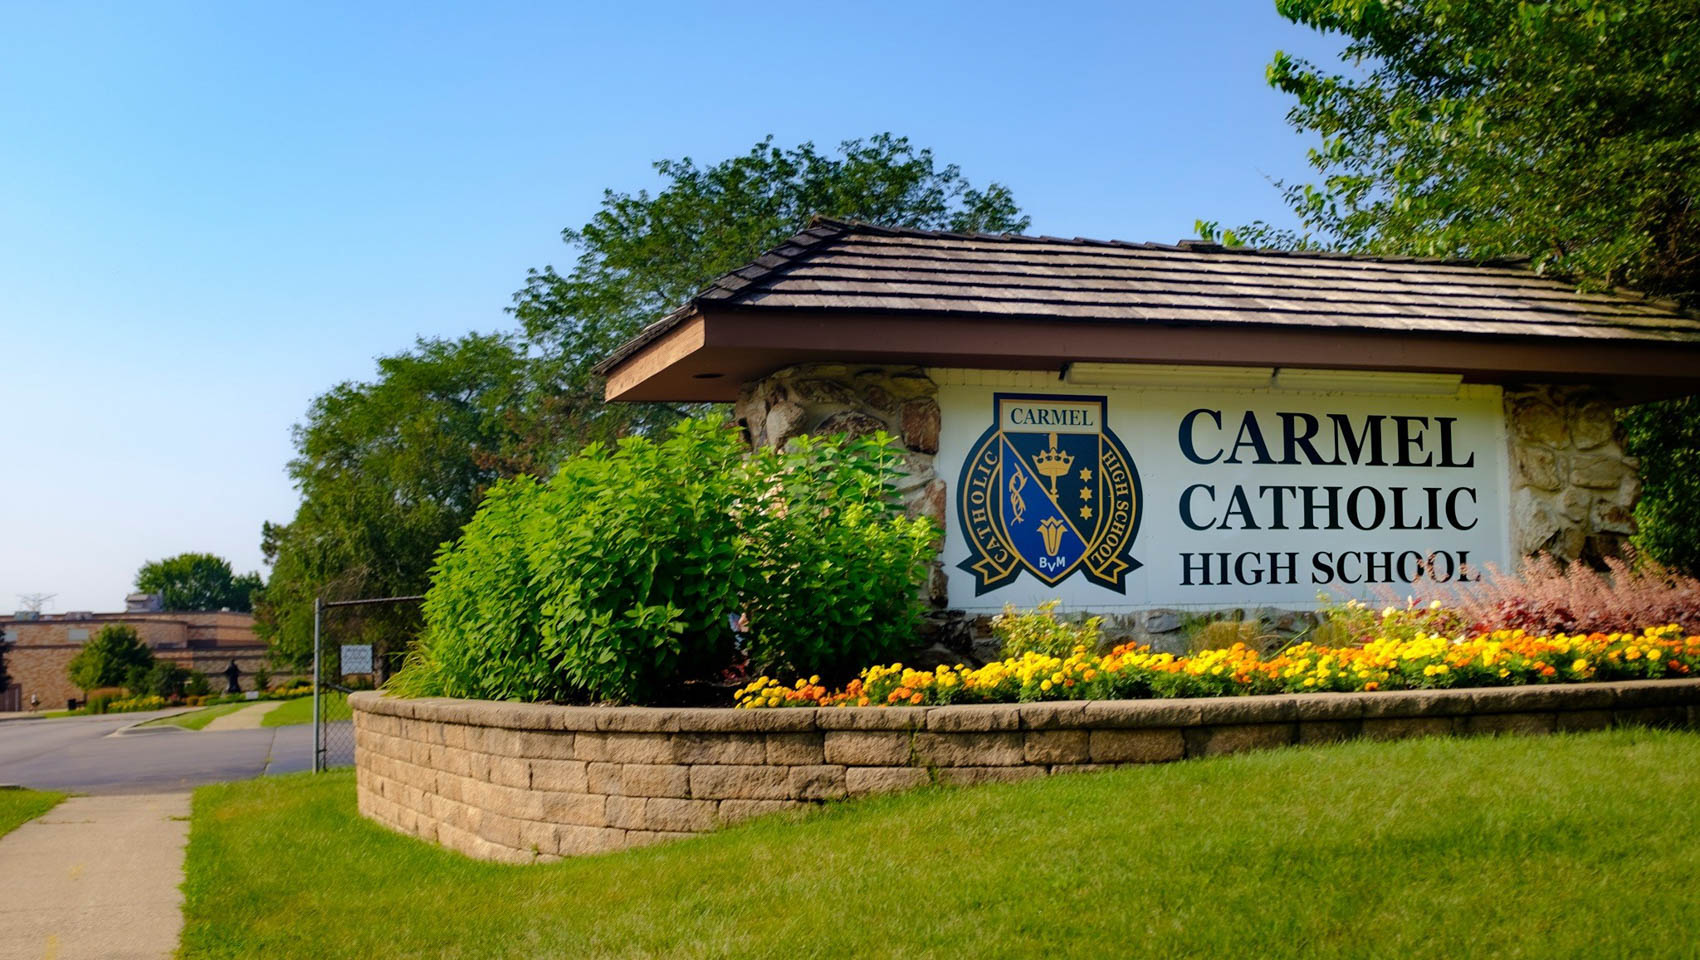 Carmel Catholic High School sign on campus